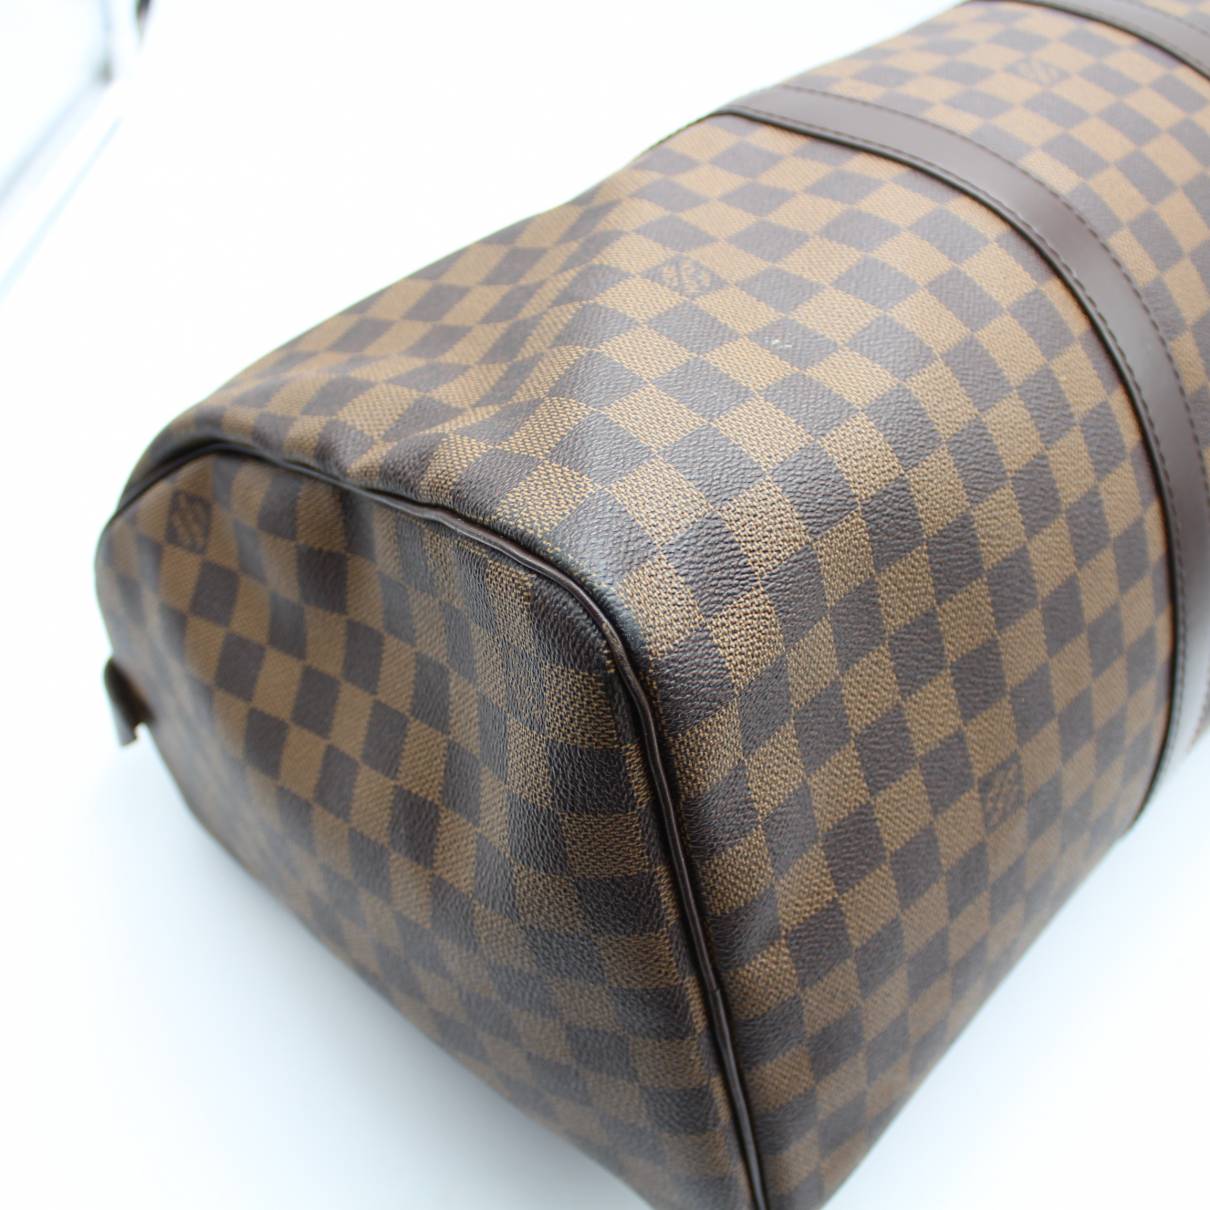 Keepall cloth travel bag Louis Vuitton Brown in Cloth - 38021519